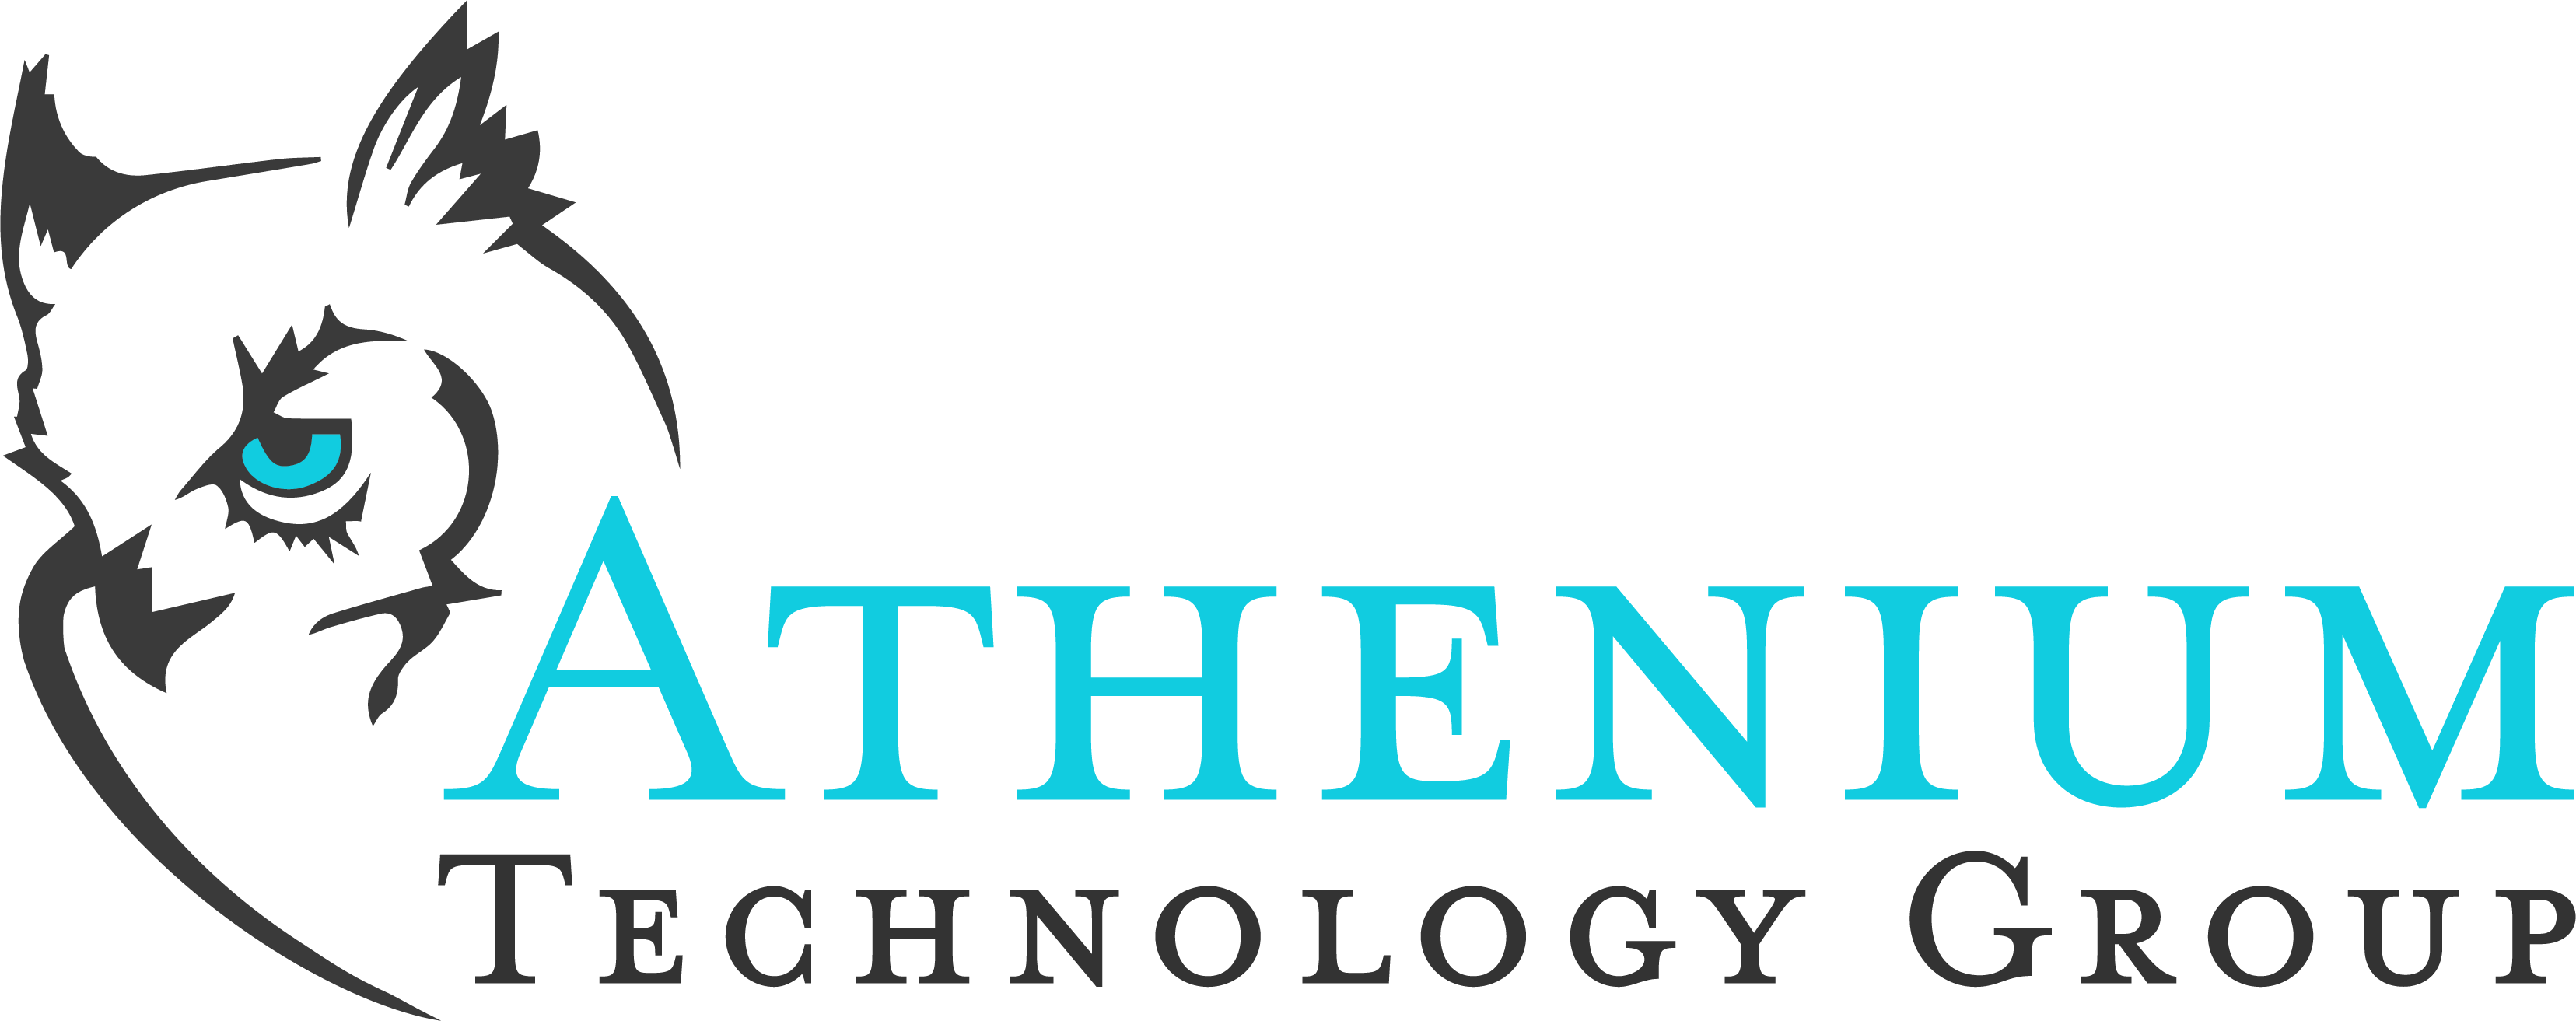 Athenium Technology Group logo